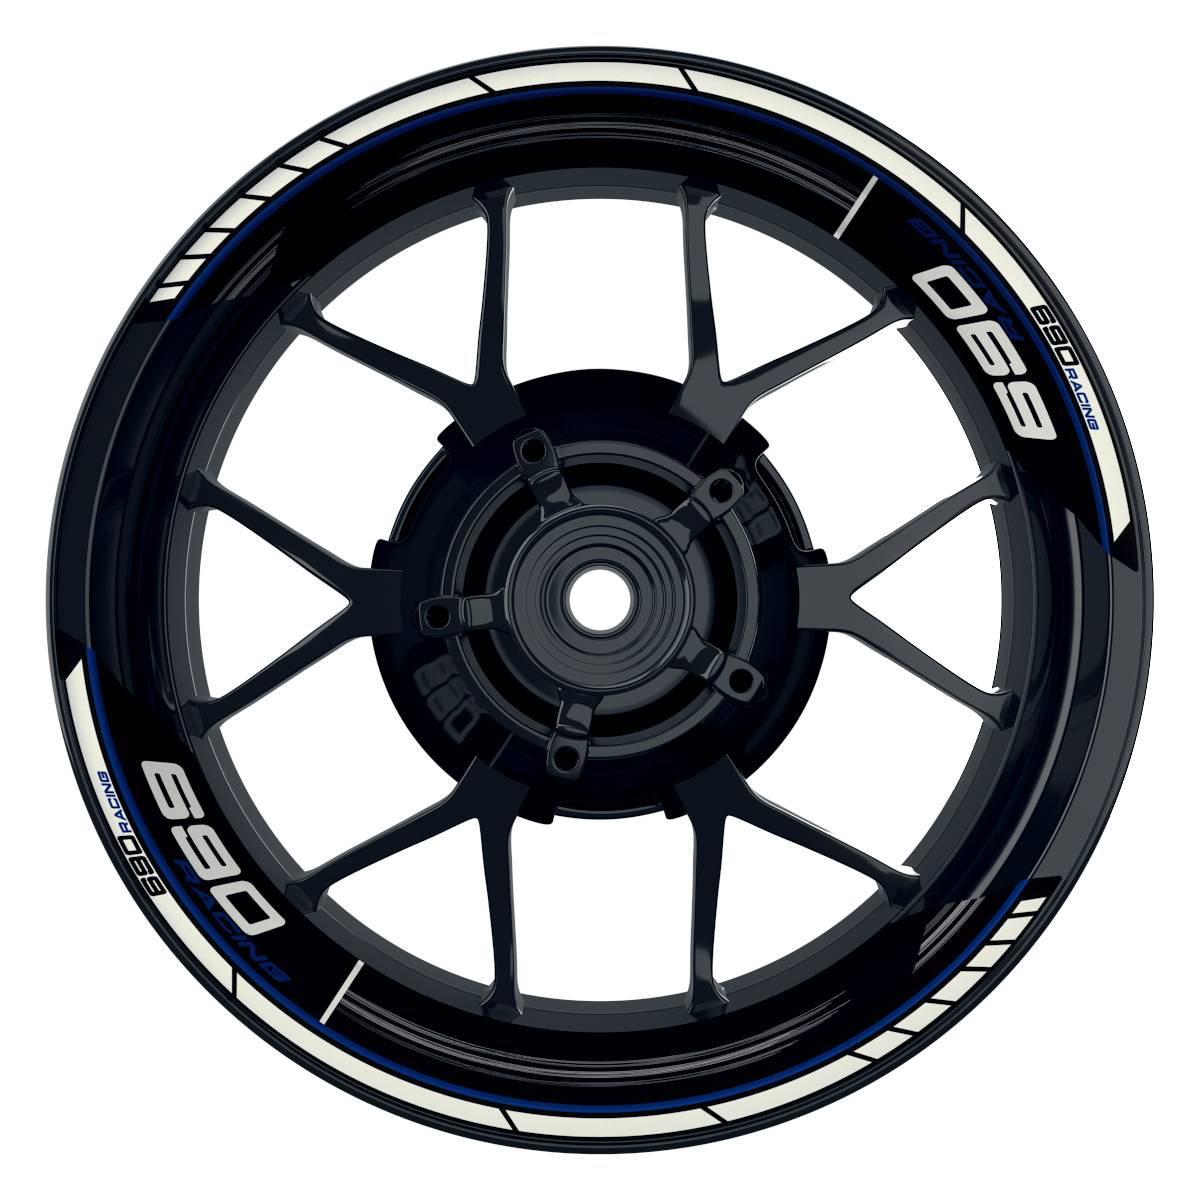 KTM Racing 690 Scratched schwarz blau Frontansicht